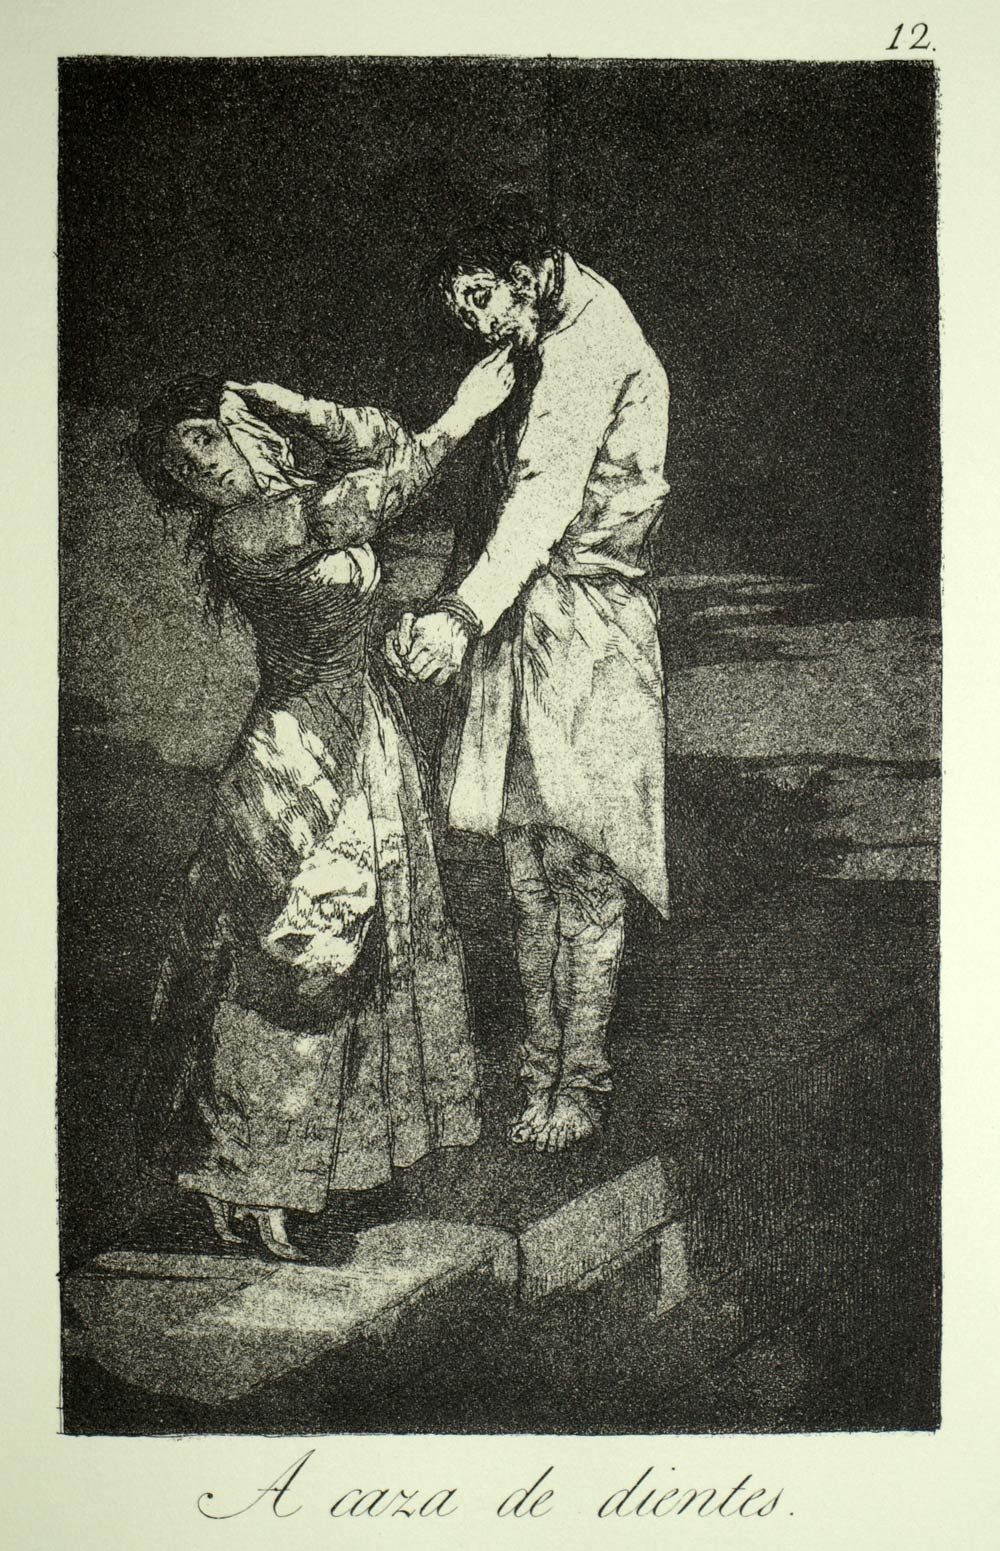 CAZA DE DIENTES, Francisco de Goya, eau forte gravure de los caprichos 